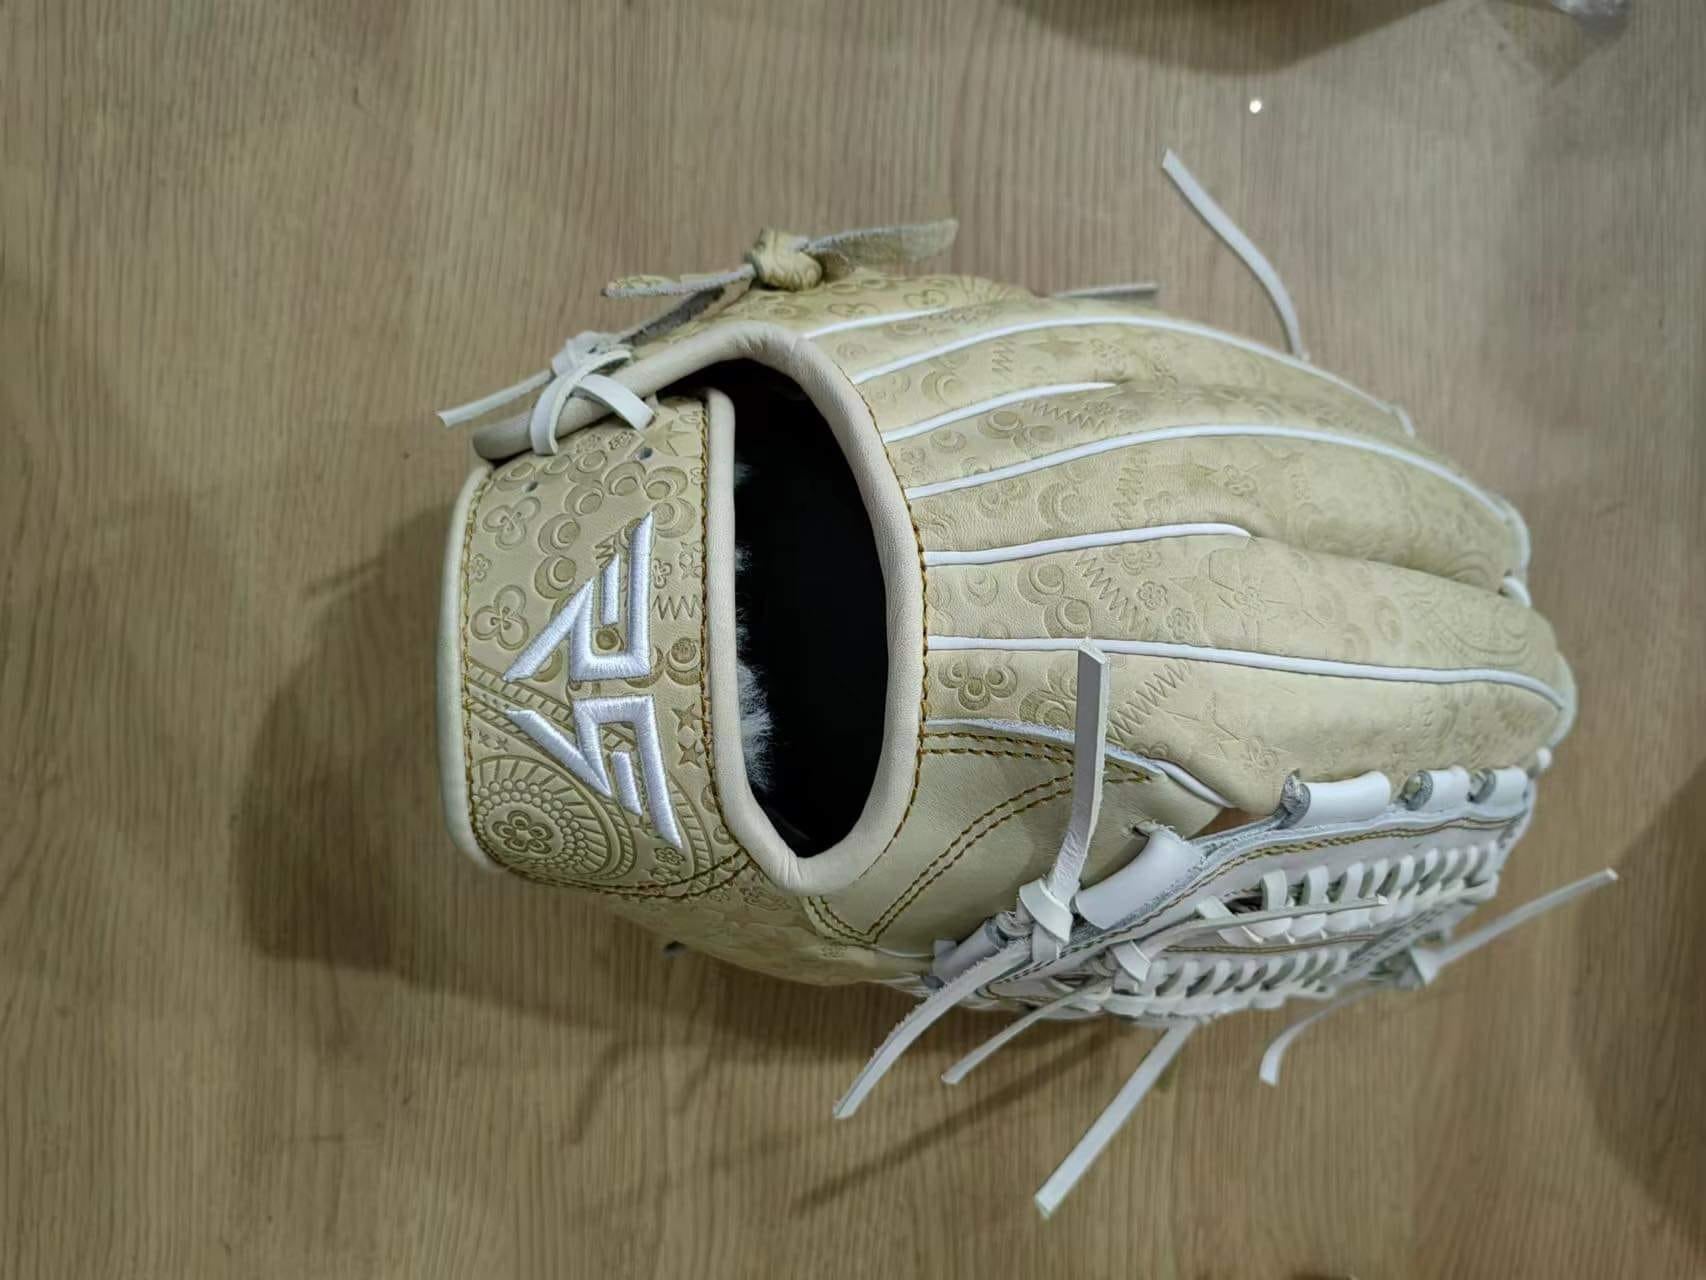 Hit or Mitts? Custom Fielding Gloves vs Batting Gloves